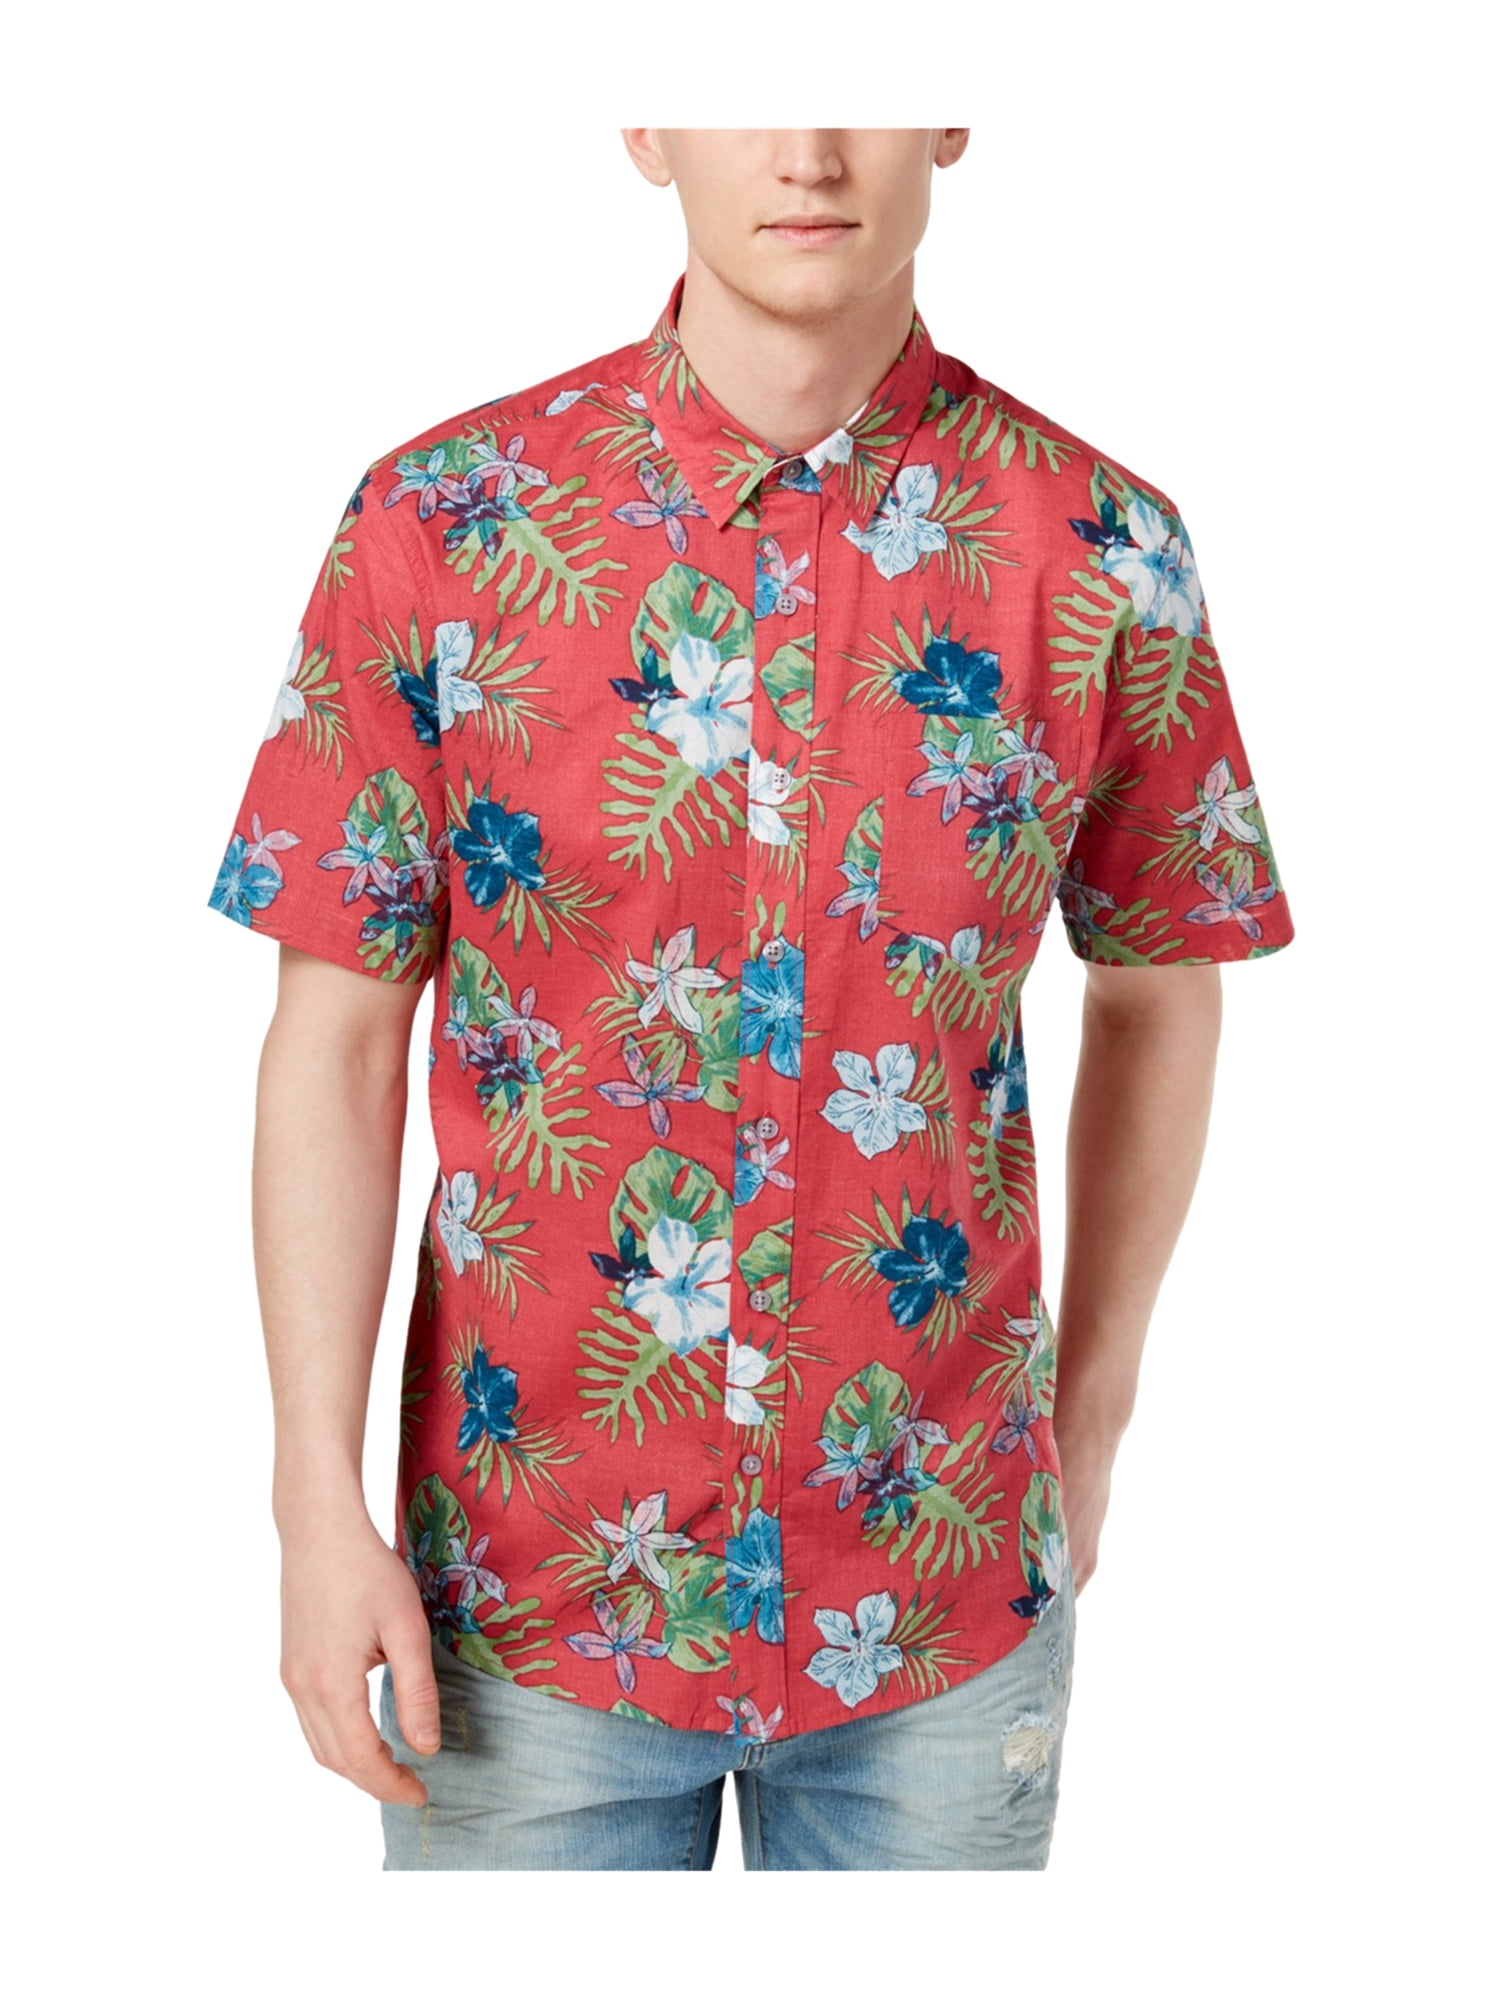 American Rag Mens Hawaiian Button Up Shirt wildgeranium 2XL | Walmart ...